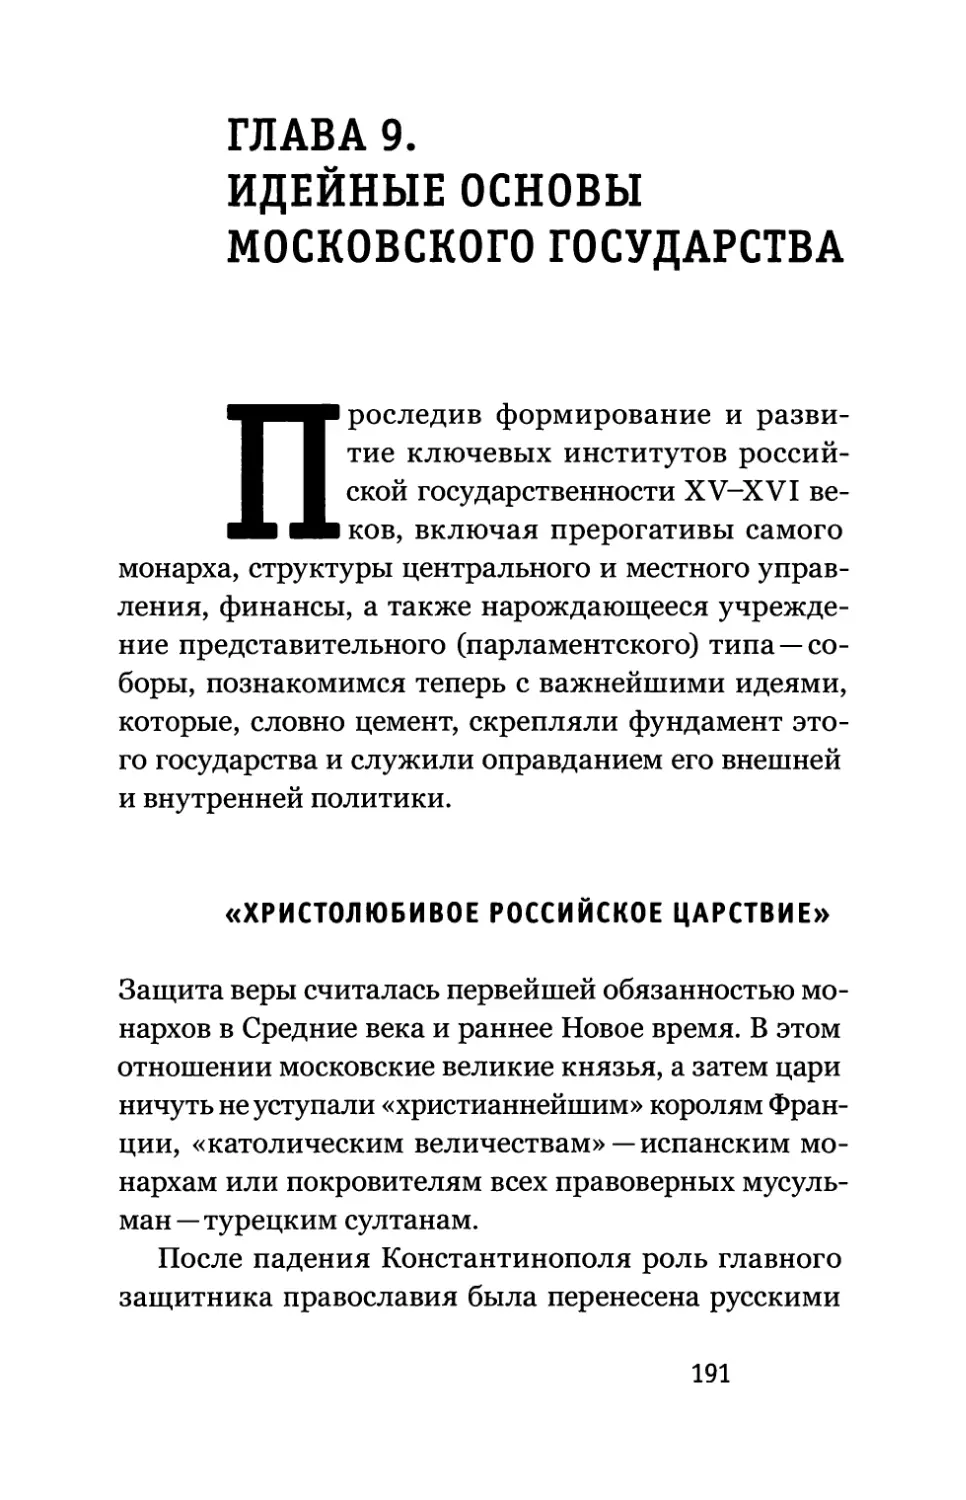 Глава 9. Идейные основы Московского государства